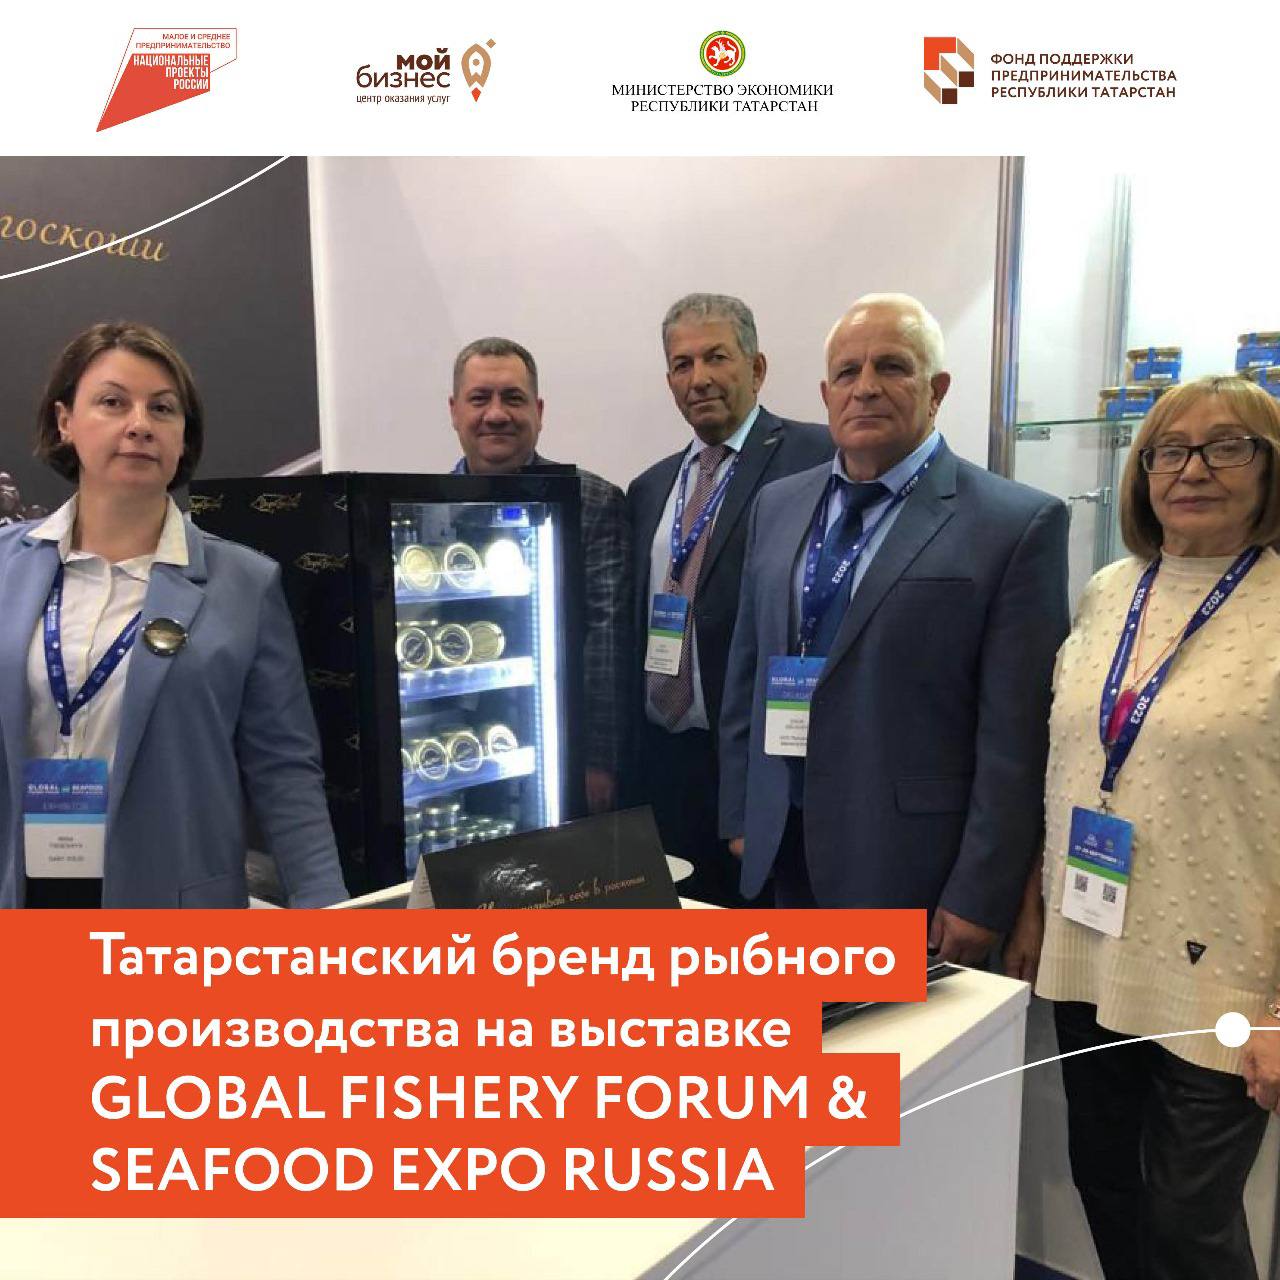 Татарстанский бренд рыбного производства представил свою продукцию на отраслевой выставке GLOBAL FISHERY FORUM & SEAFOOD EXPO RUSSIA.